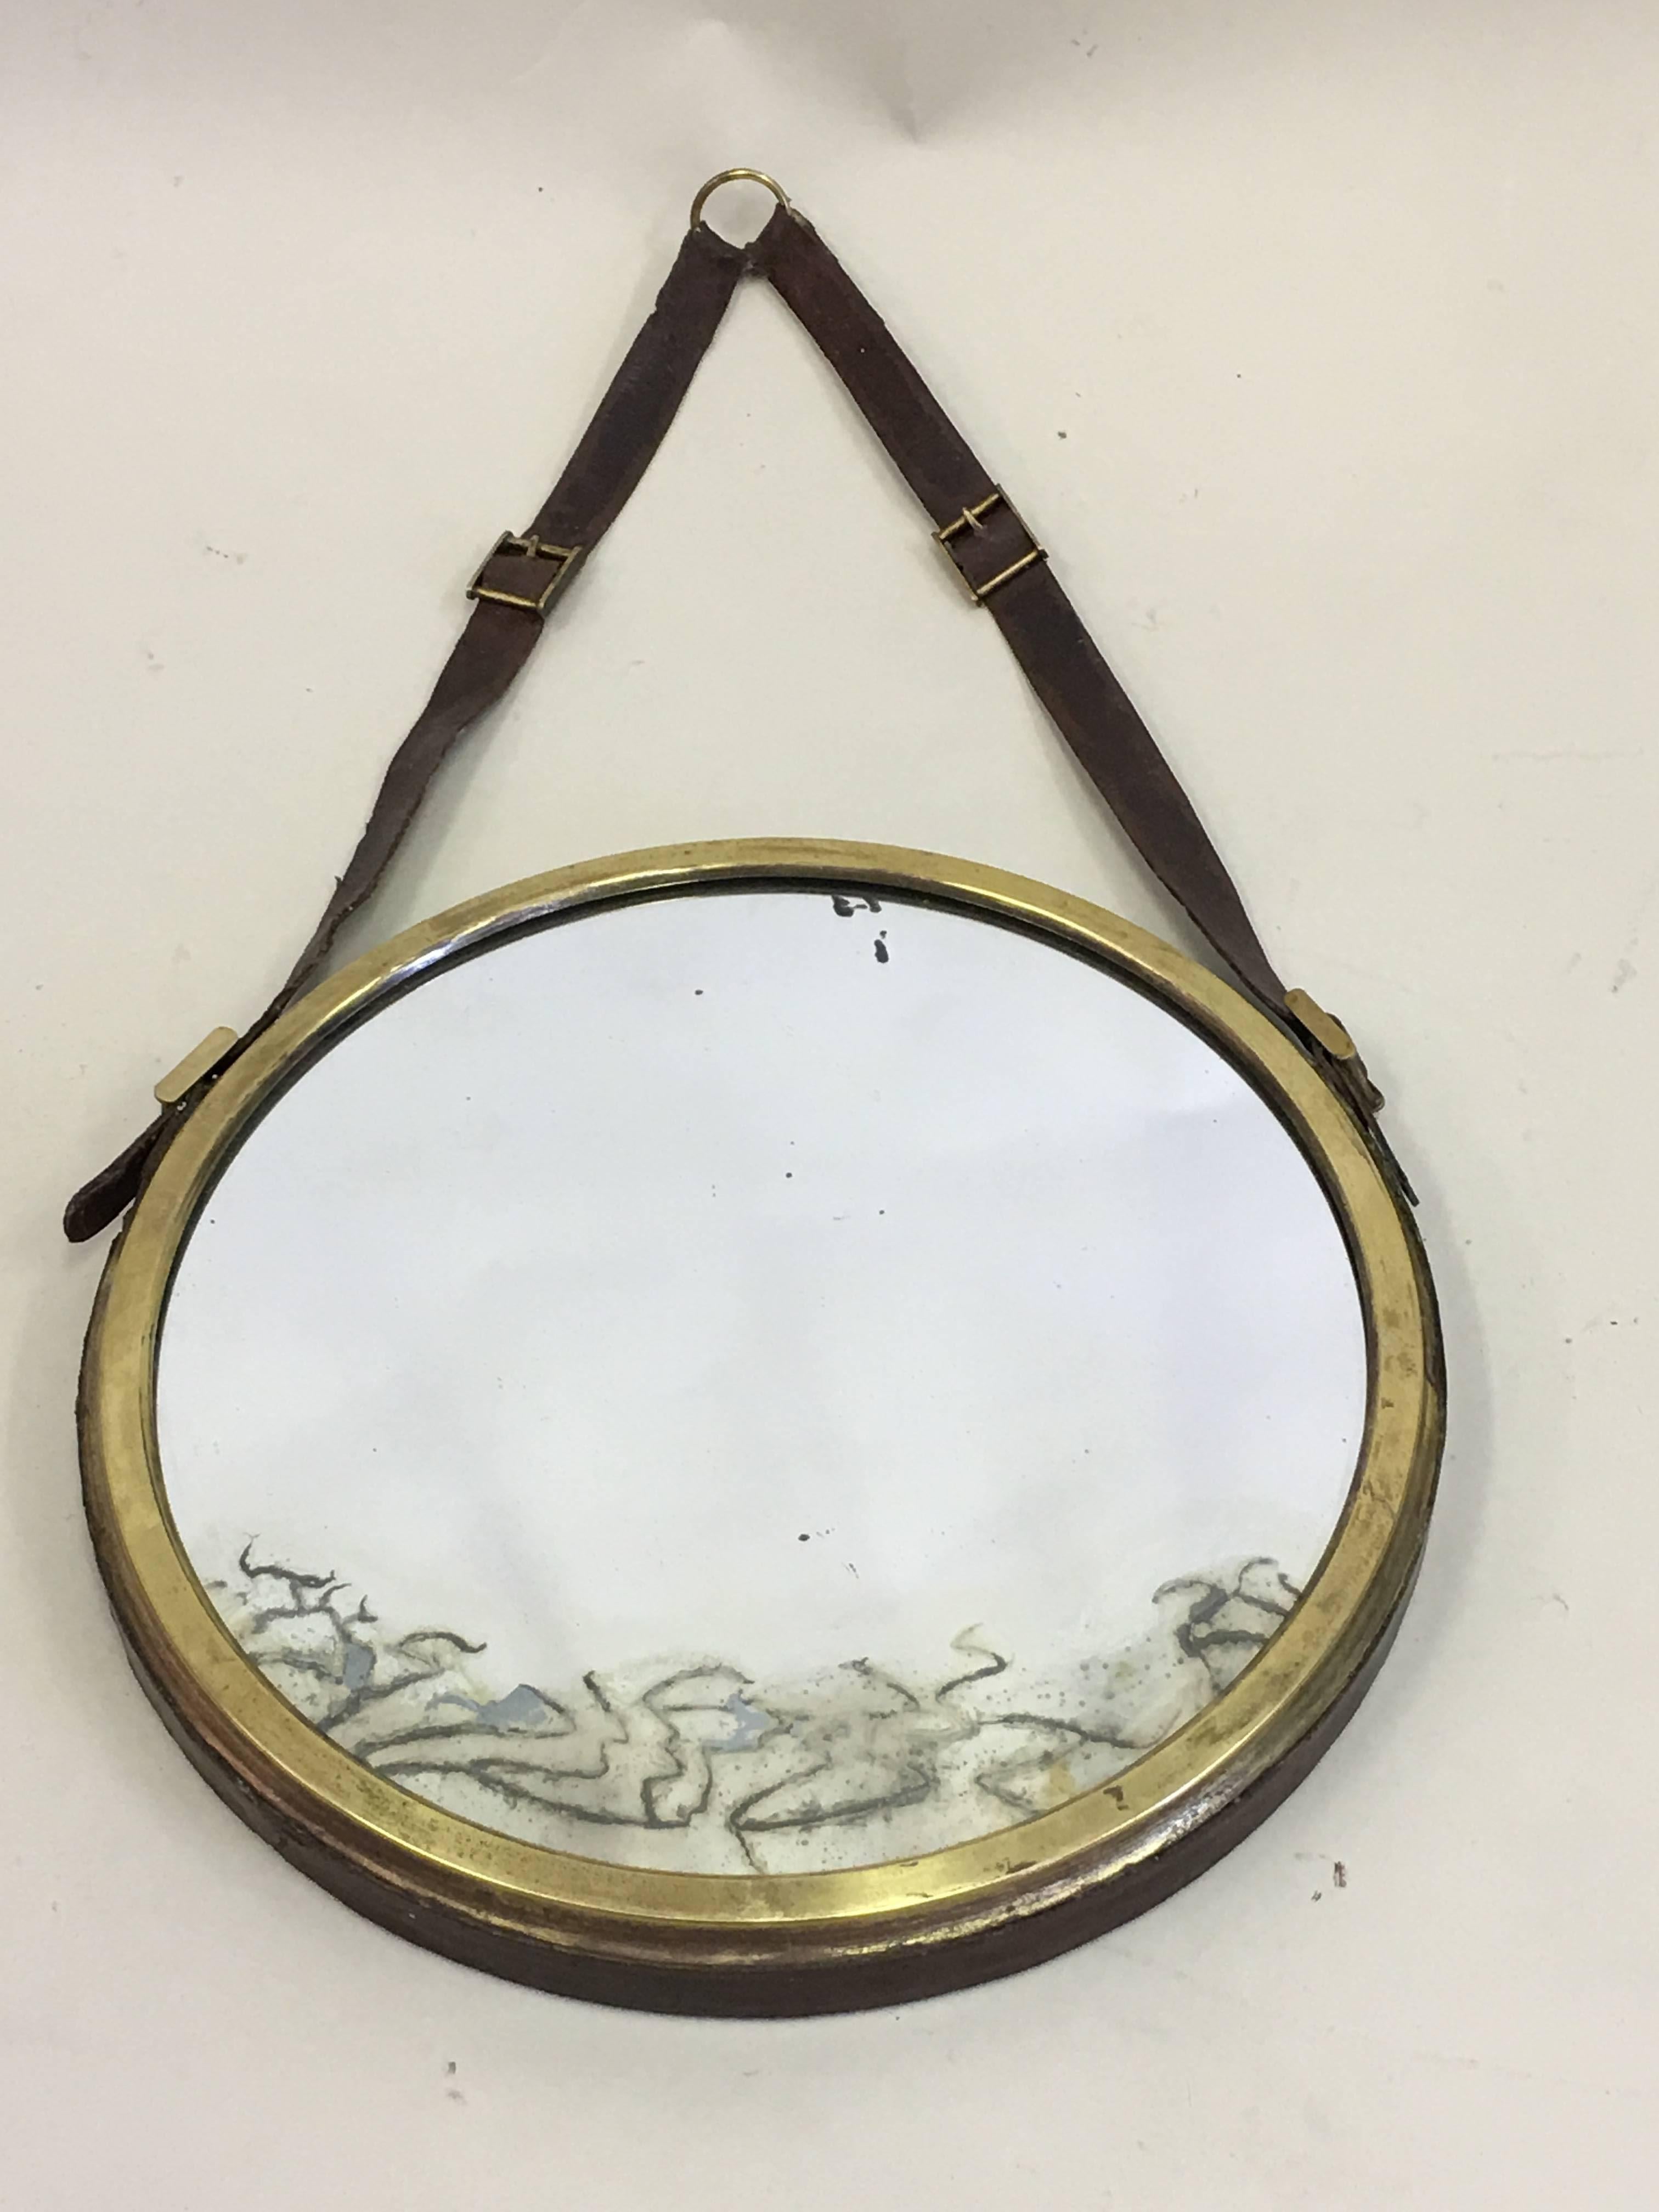 Französischer neoklassischer, lederbezogener Spiegel im Stil von Jacques Adnet aus der Jahrhundertmitte. Das Stück ist rund / kreisförmig mit einem Rahmen aus Messing, der mit Leder überzogen ist und an Lederriemen aufgehängt ist.